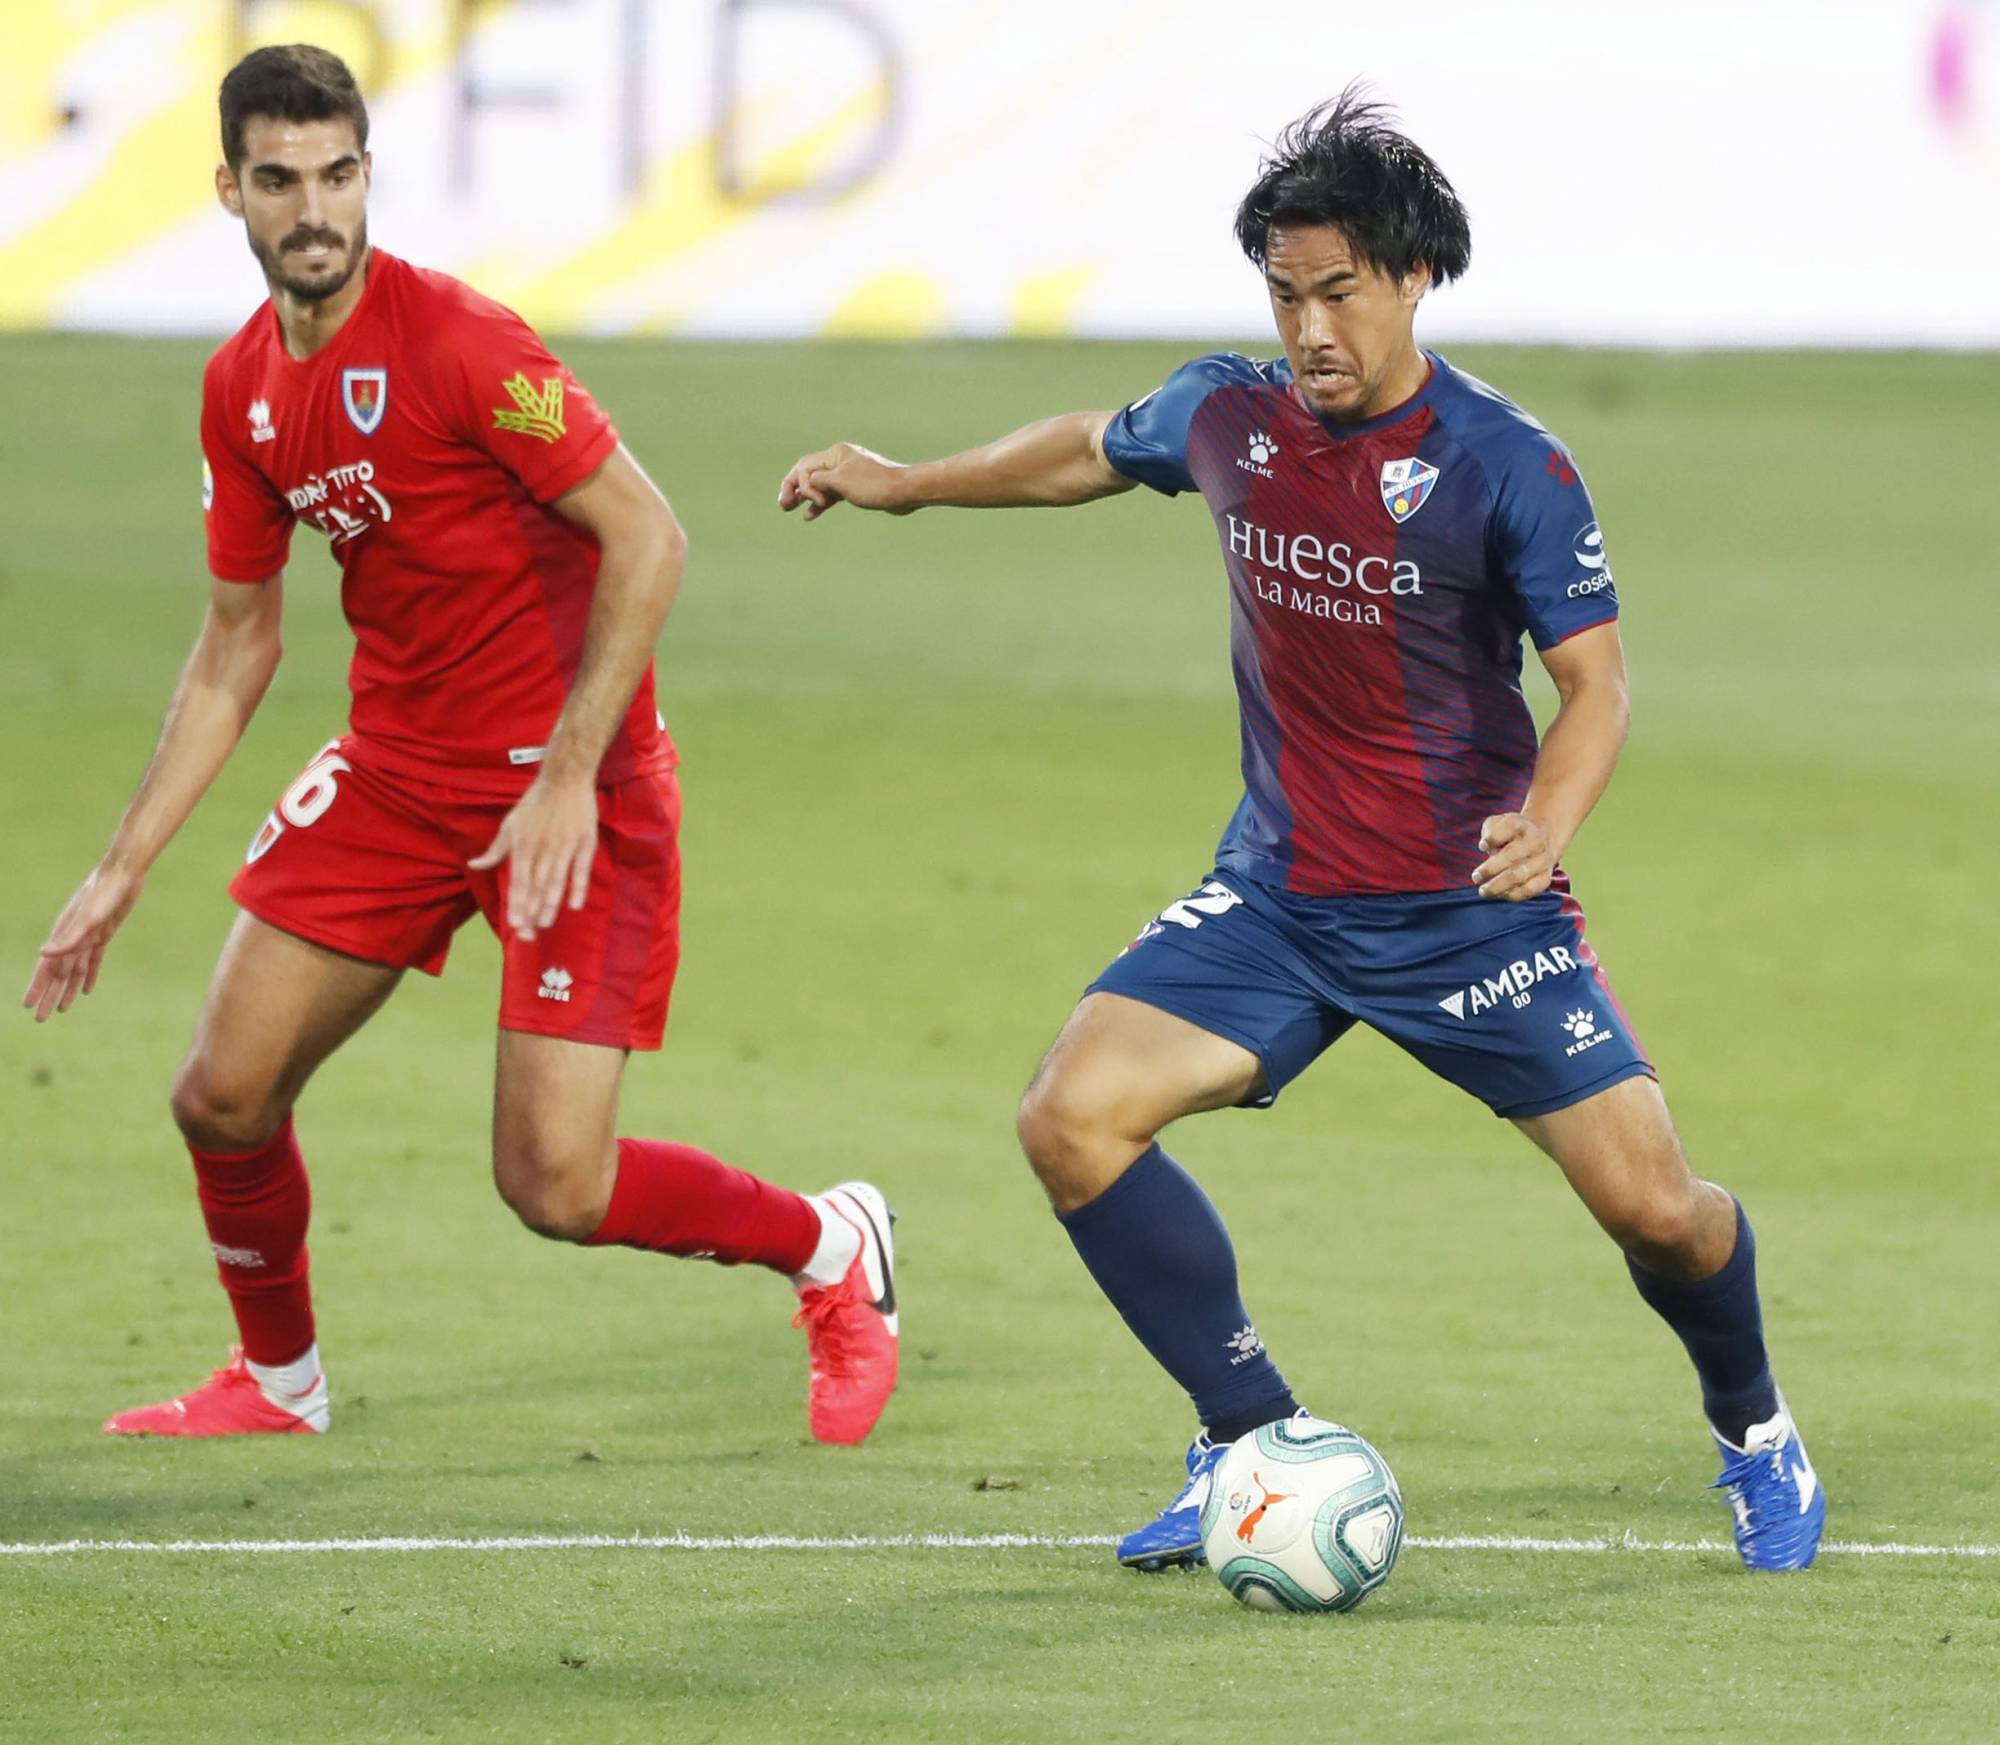 Shinji Okazaki scores as Huesca secures promotion to La Liga